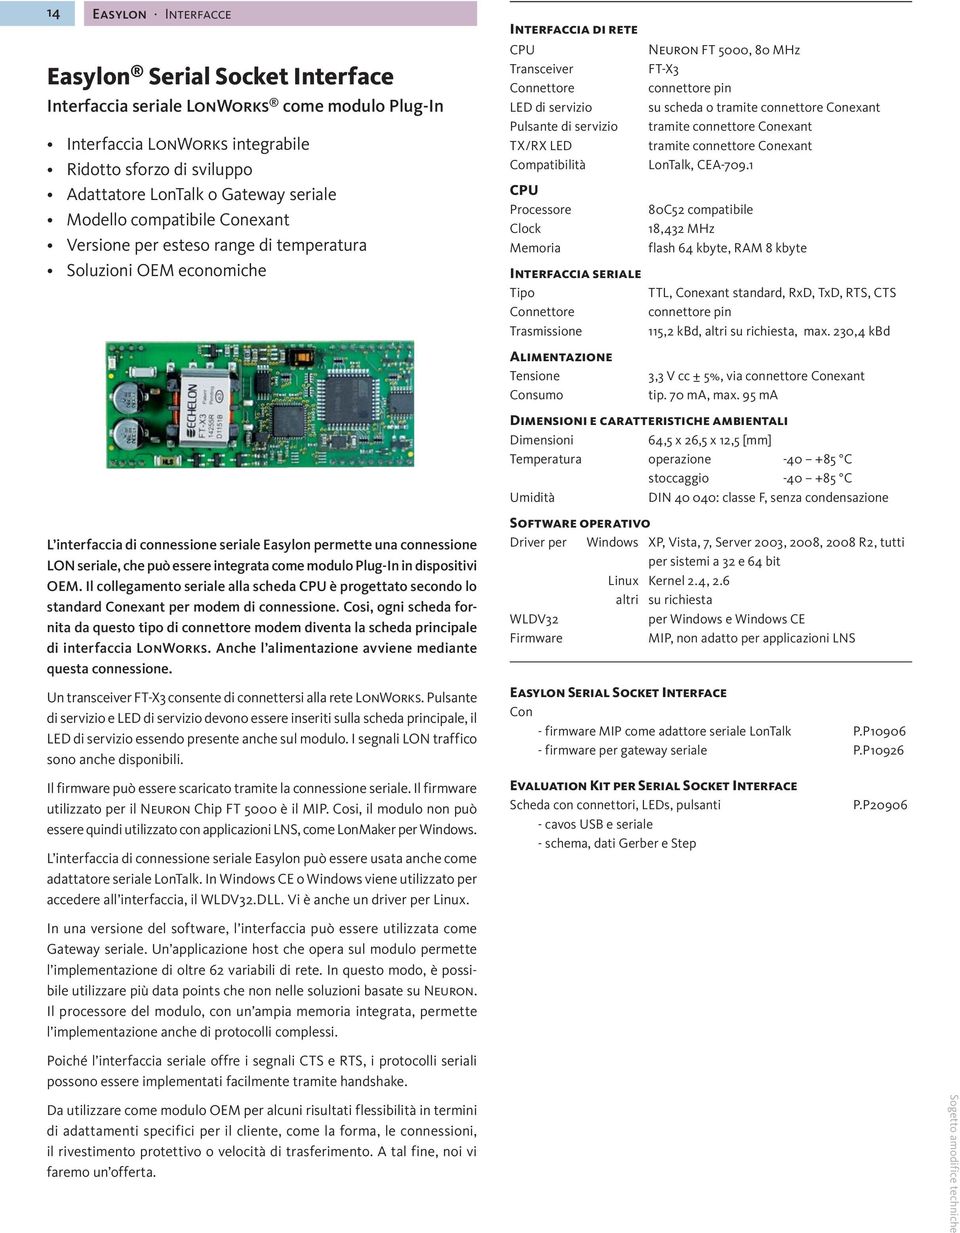 Compatibilità CPU Processore Clock Memoria Interfaccia seriale Tipo Connettore Trasmissione Alimentazione Tensione Consumo Neuron FT 5000, 80 MHz FT-X3 connettore pin su scheda o tramite connettore